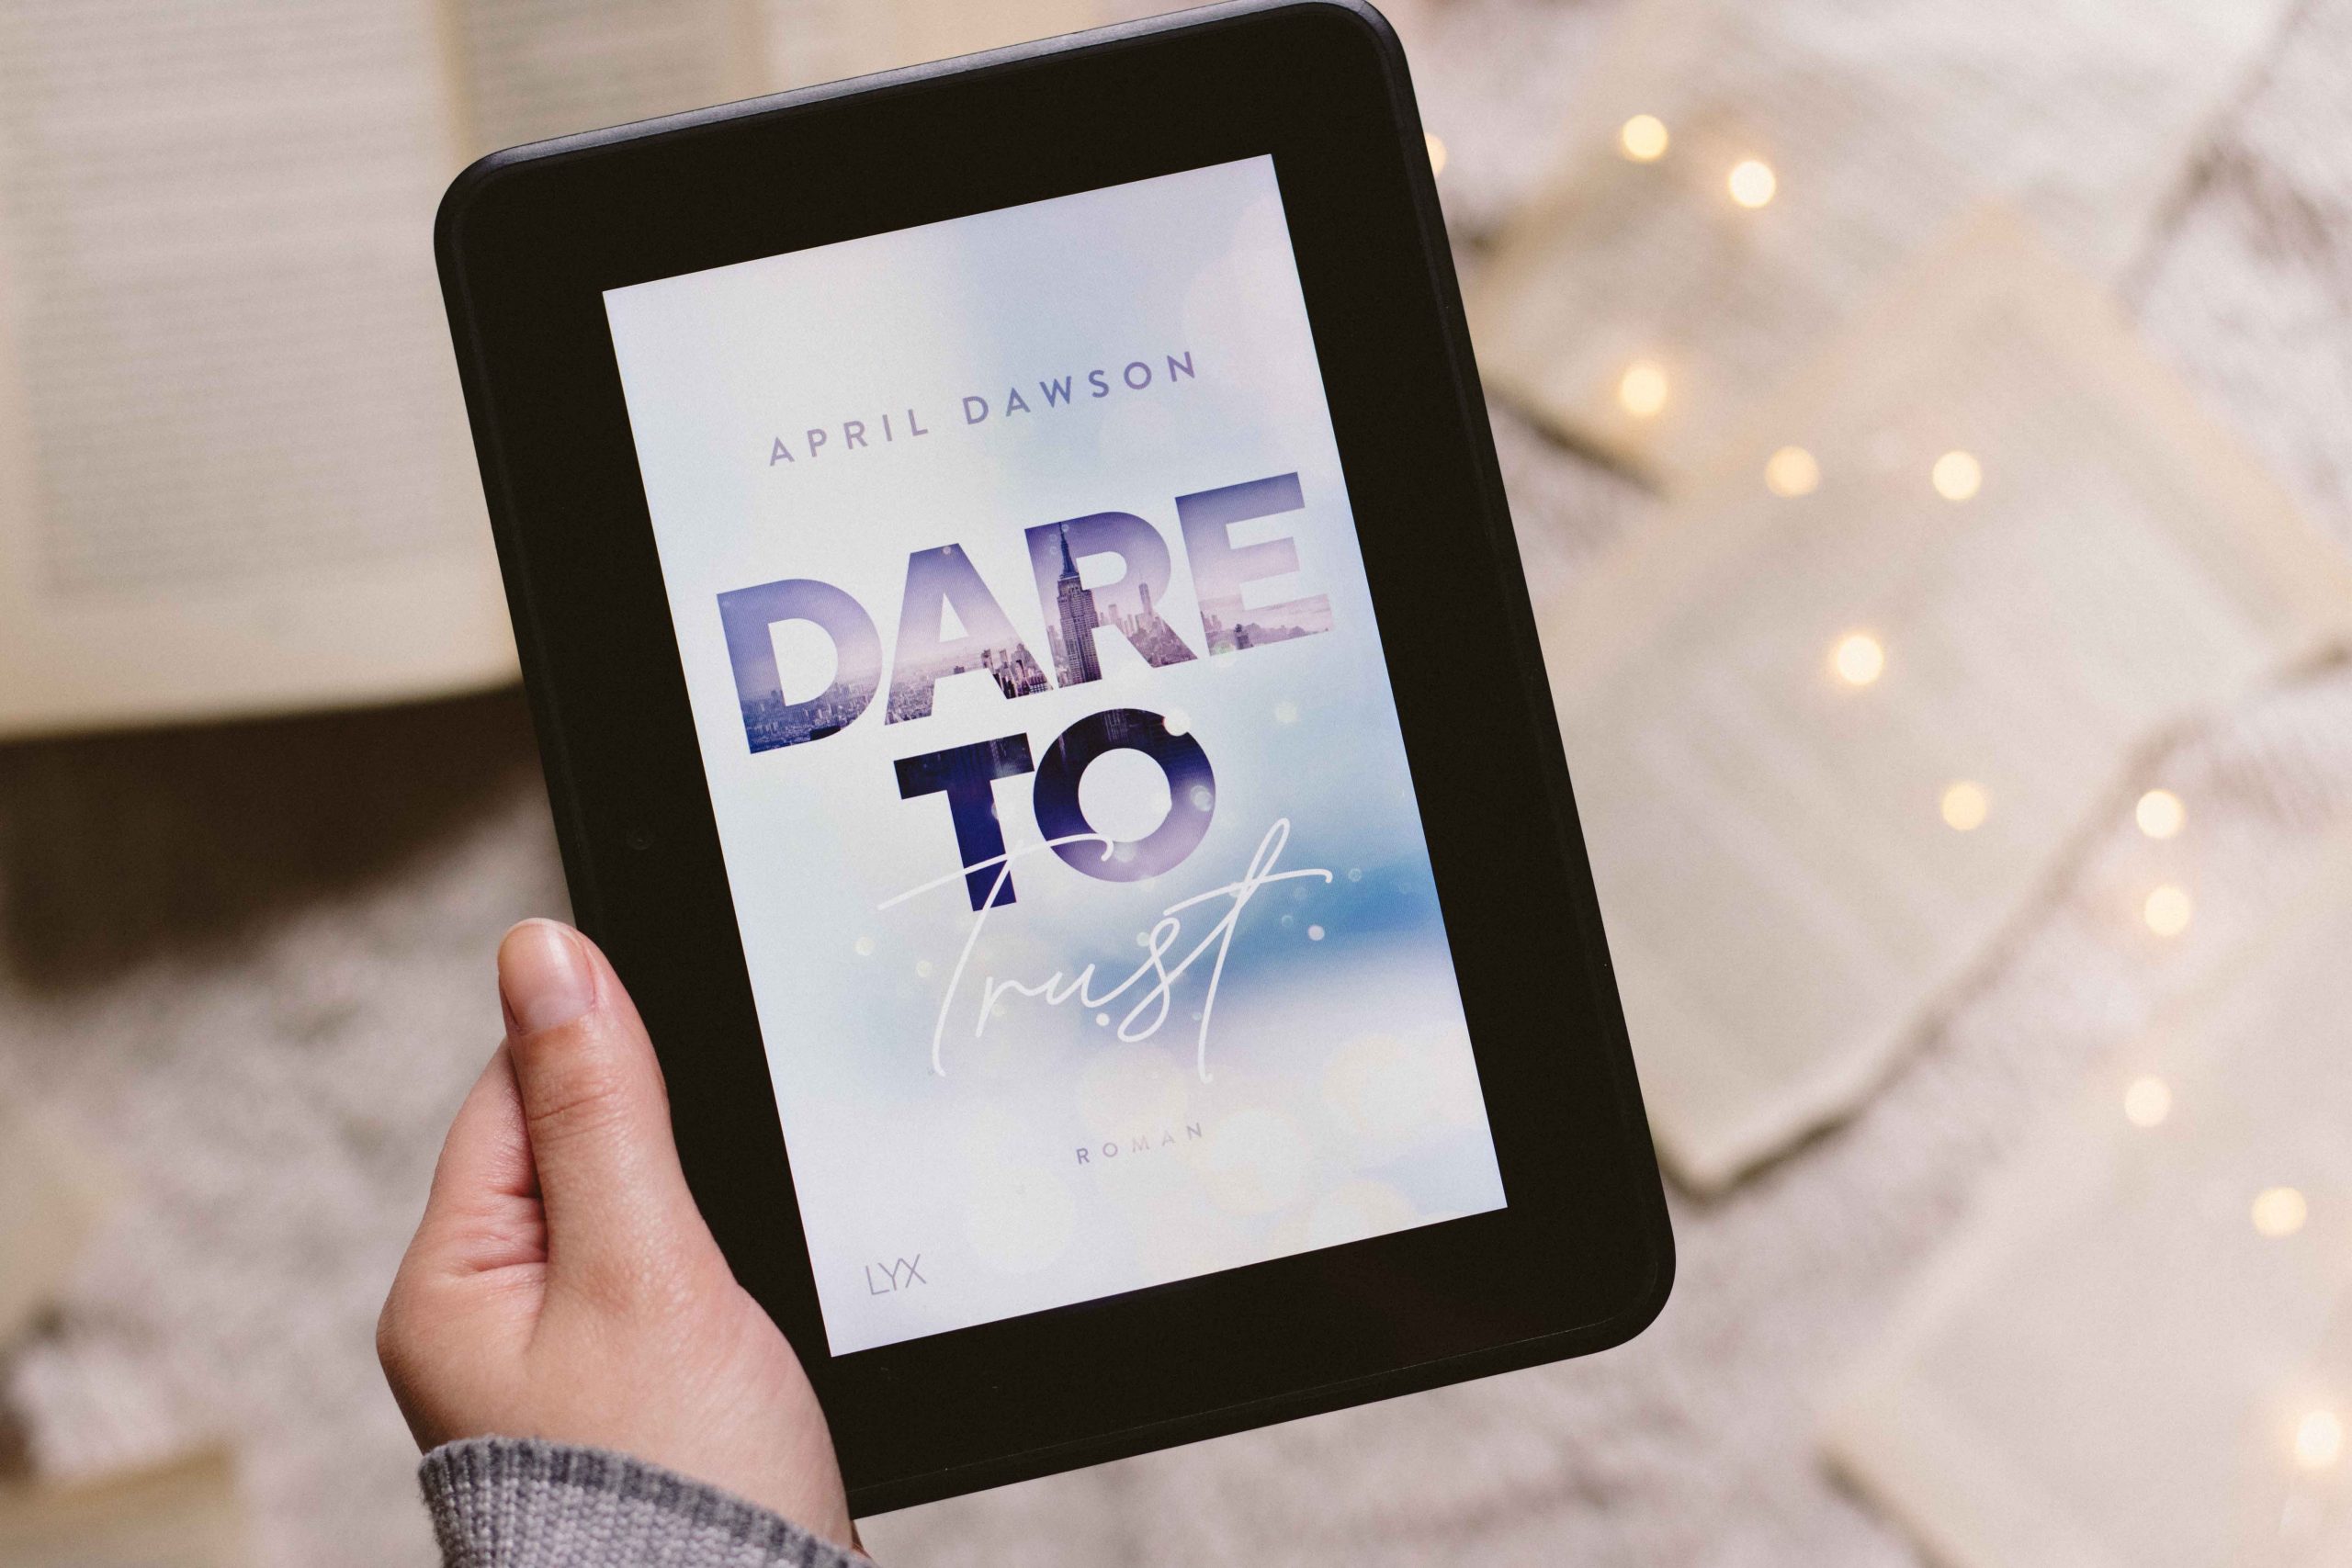 Dare to Trust – Dare to Love #1 | April Dawson